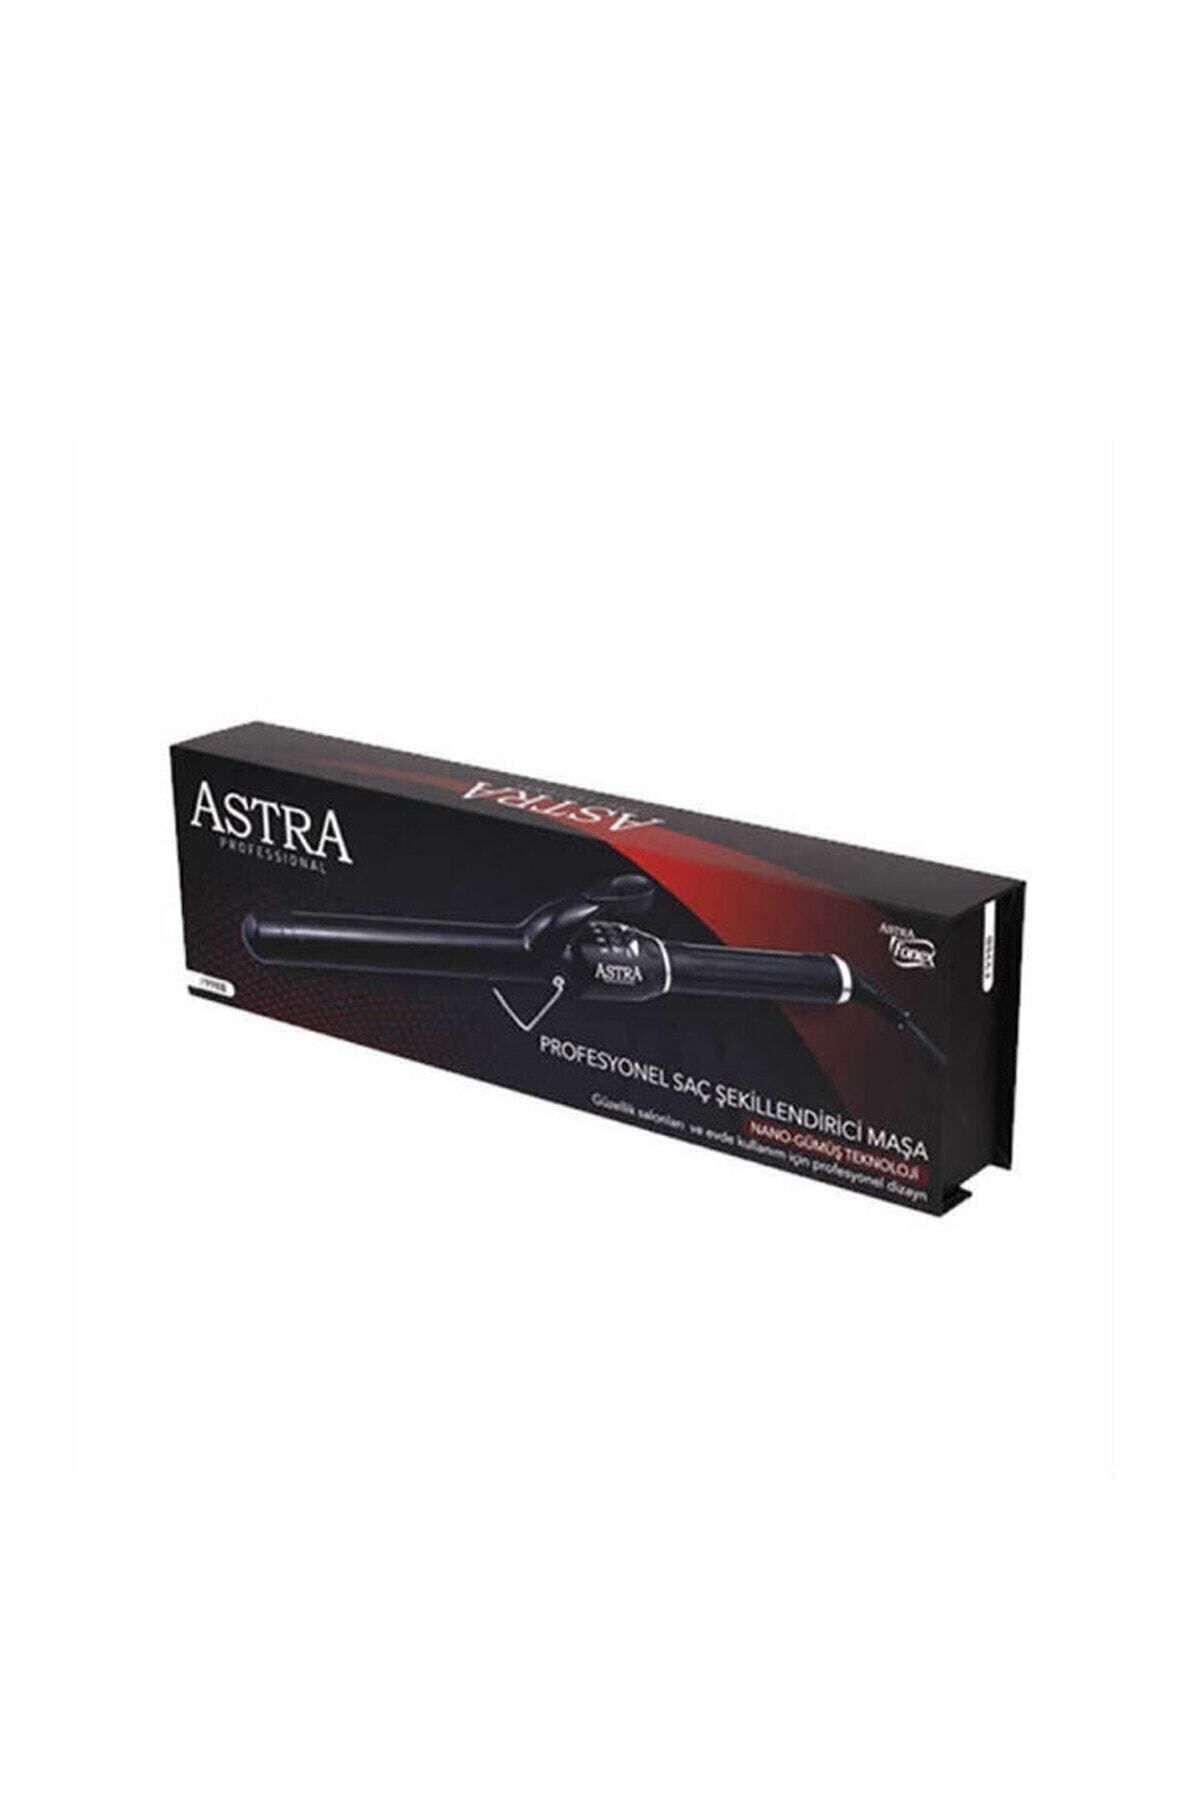 Astra F998B Profesyonel Saç Şekillendirici Maşa 25 mm